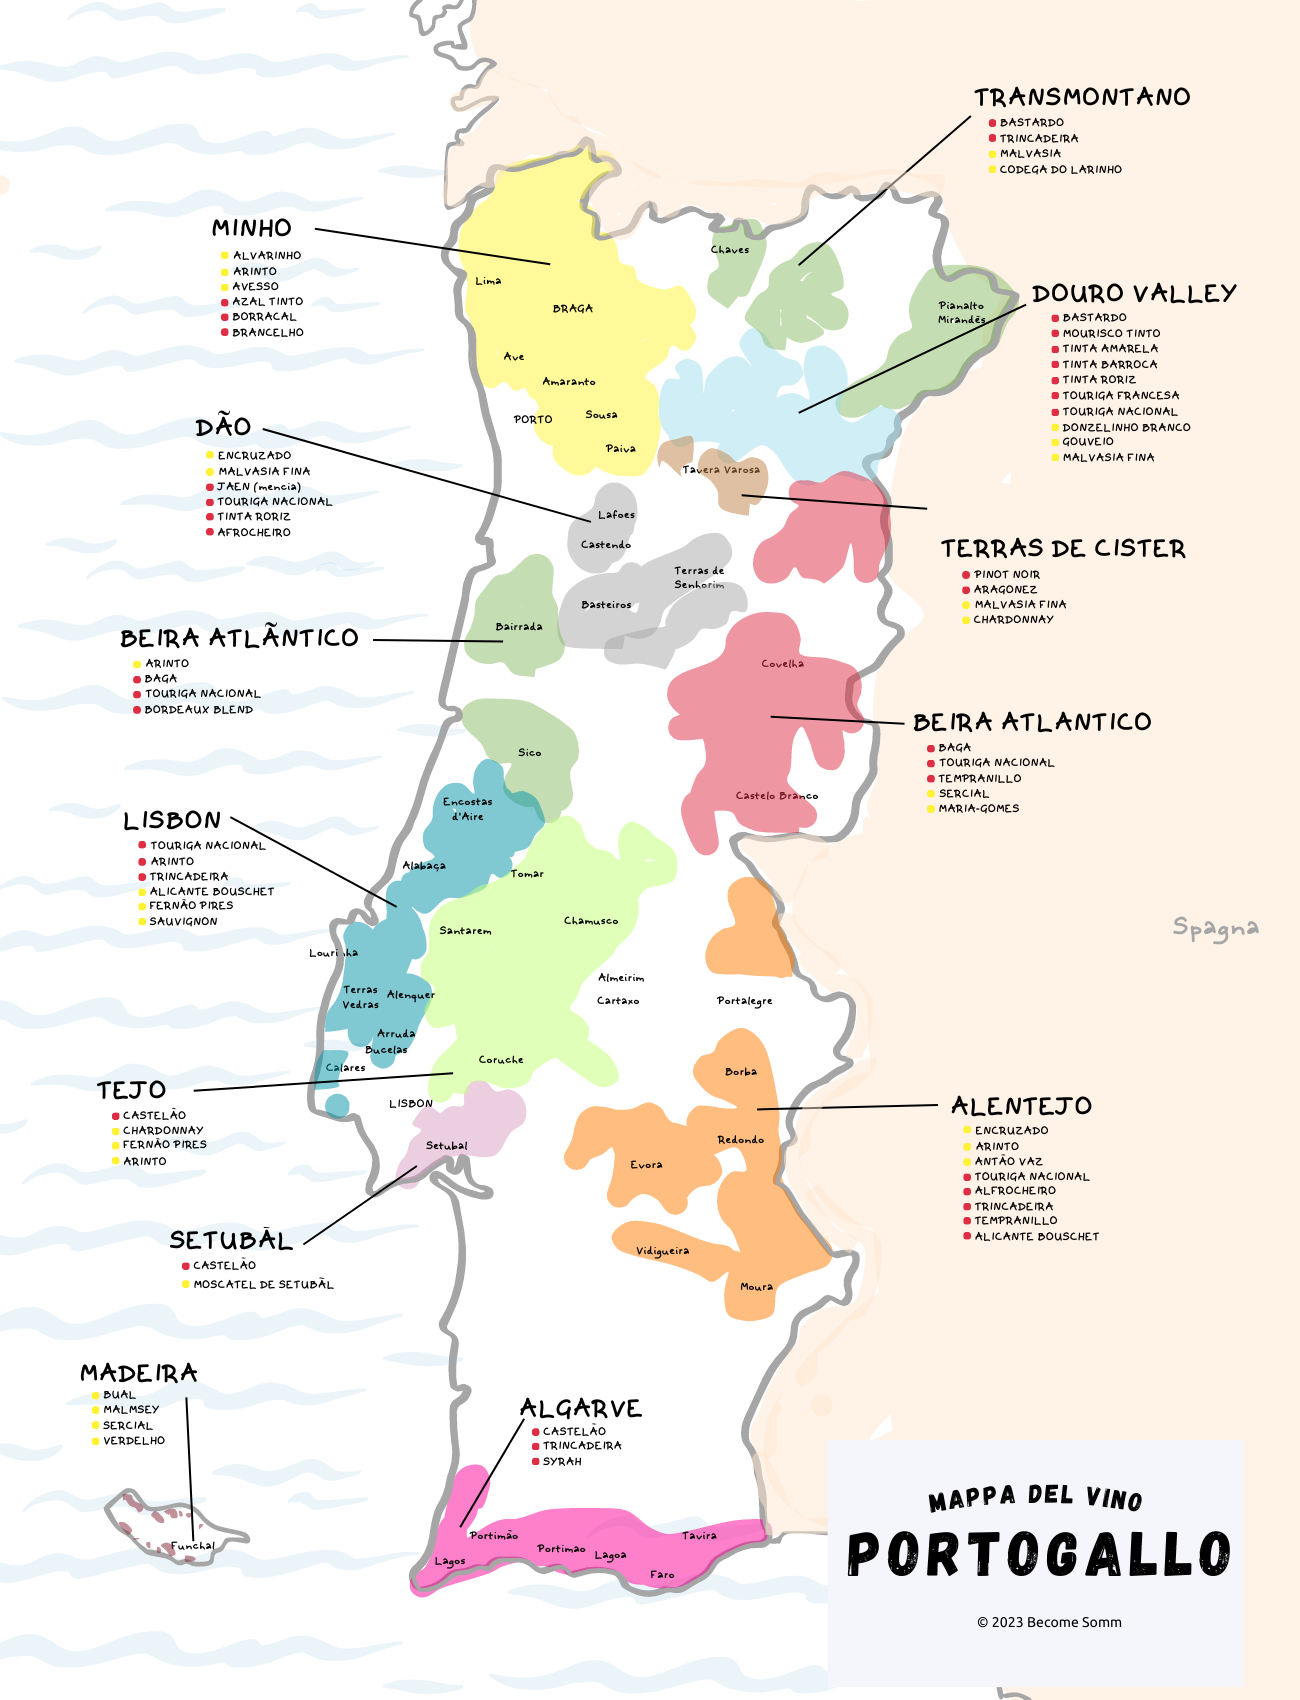 Wine Map Portugal
Mappa del Vino Portogallo
mapa do vinho de portugal
